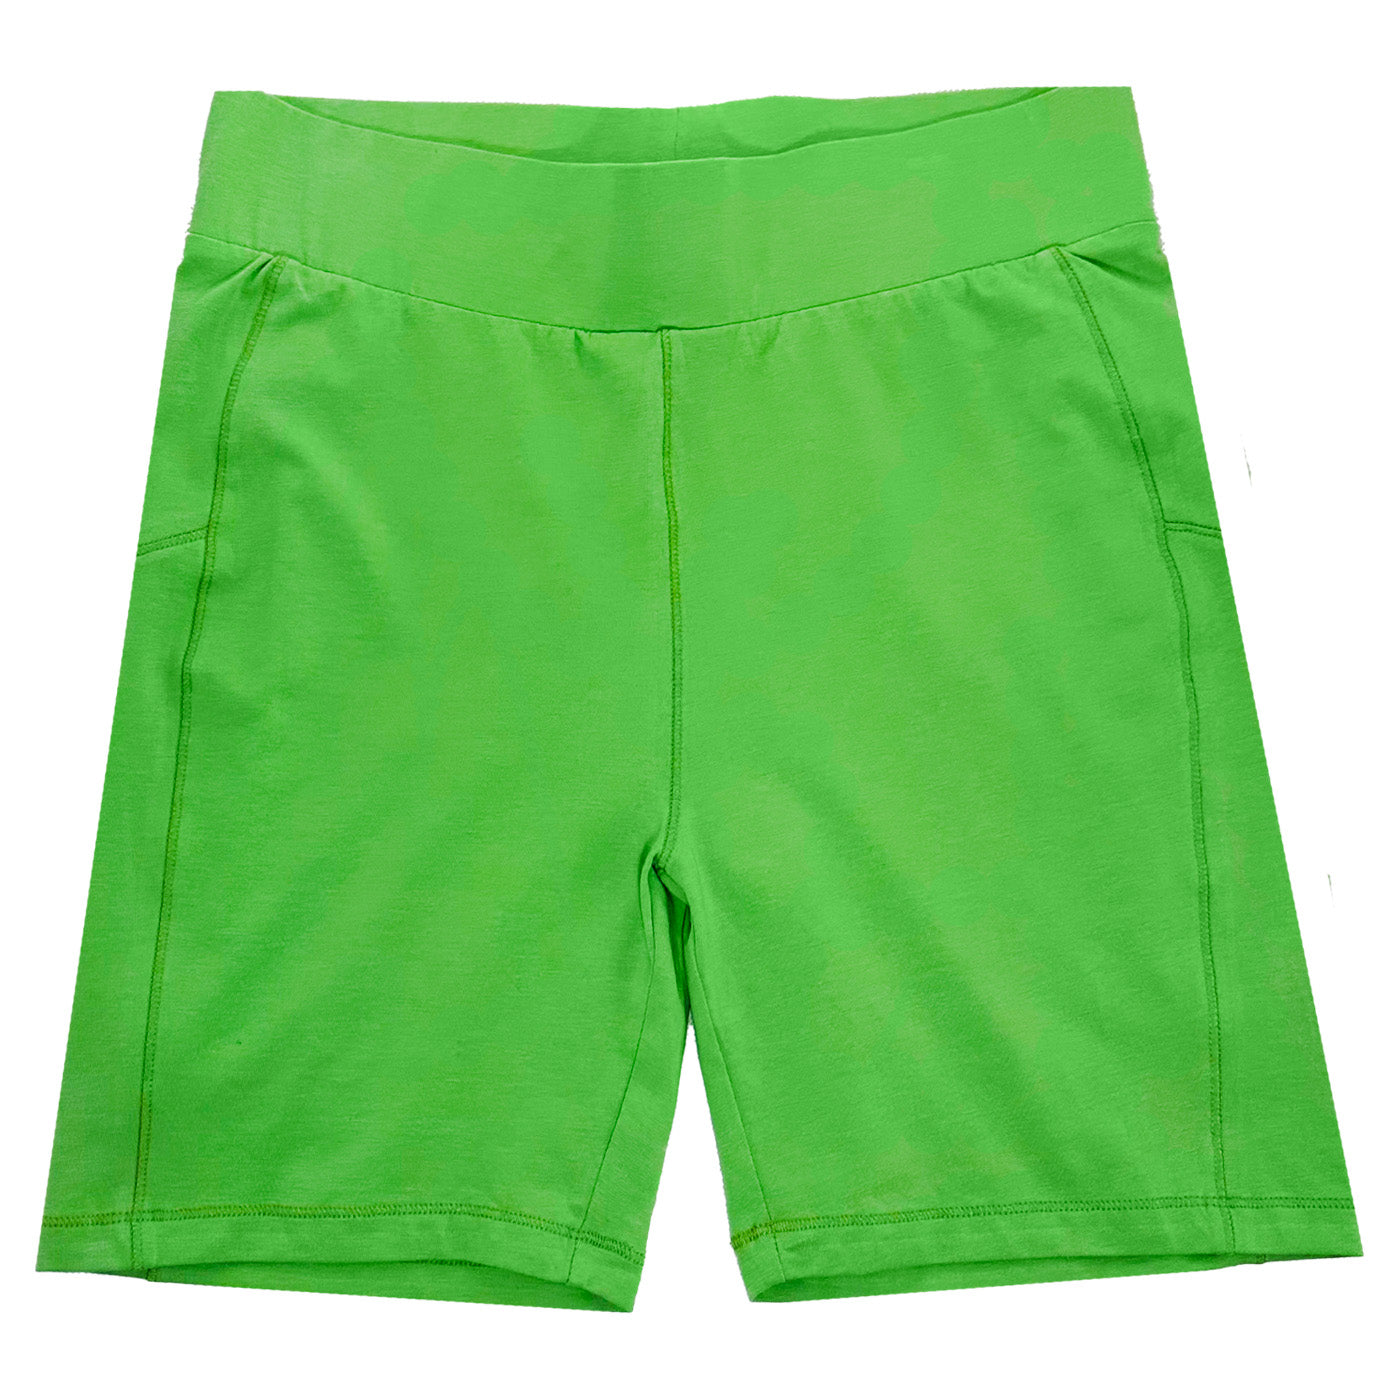 Купи на страхотна цена спортни къси панталонки Noisy May. В зелен цвят, размер М. Бърза доставка от MISMOBG. 